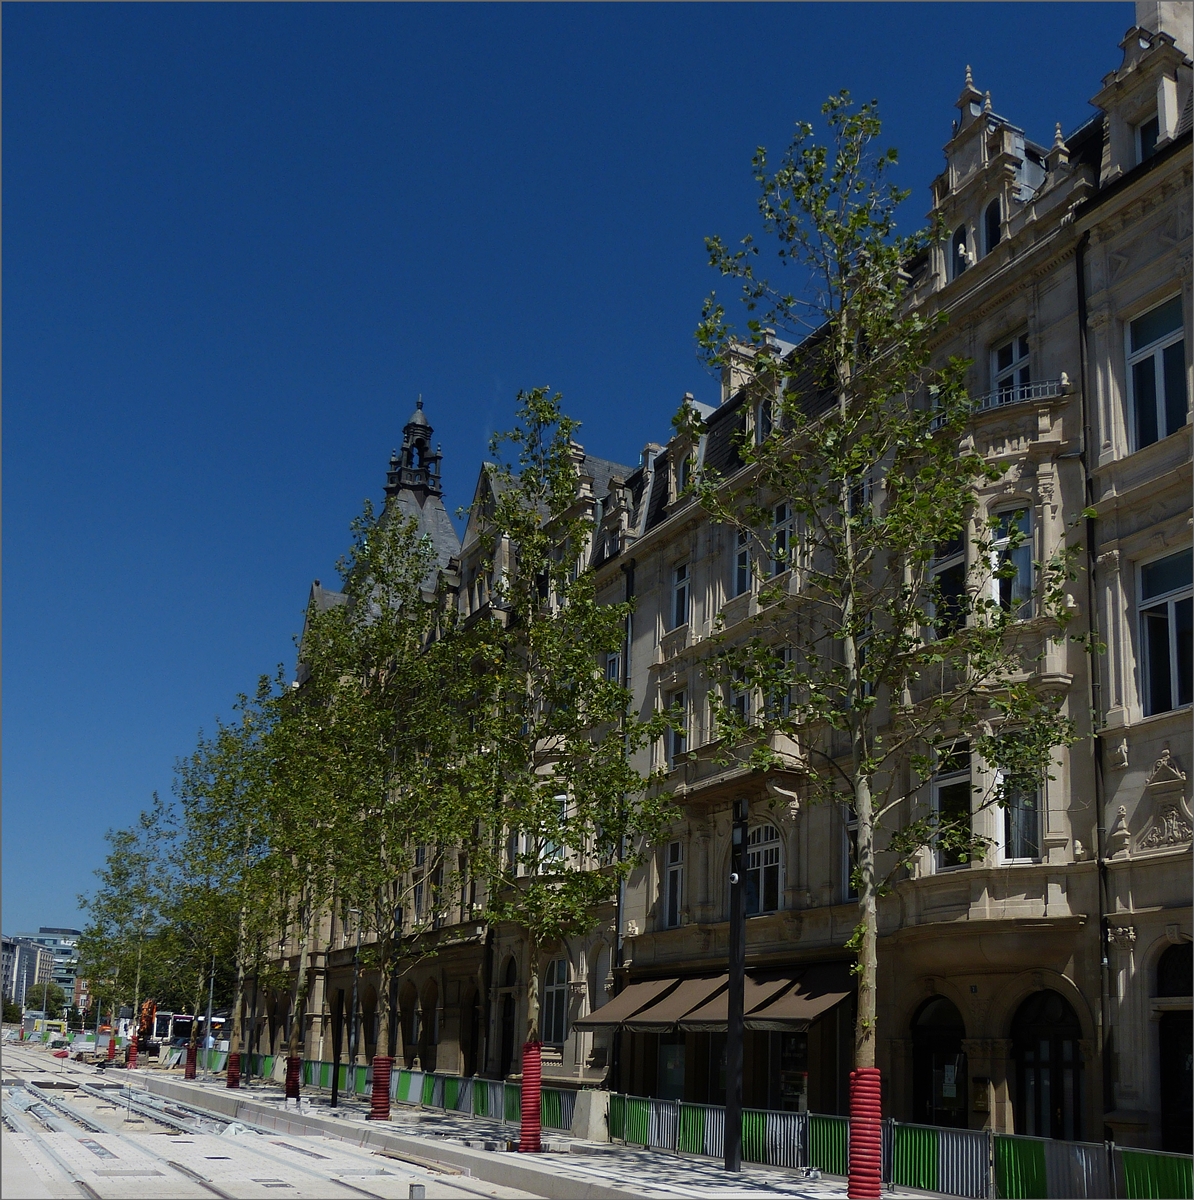 Diese Bäume in der Avenue de la Liberté (Nei Avenue), wurden vor Fertigstellung der Arbeiten an den Straßenbahnschienen neu Angepflanzt. 08.2020 